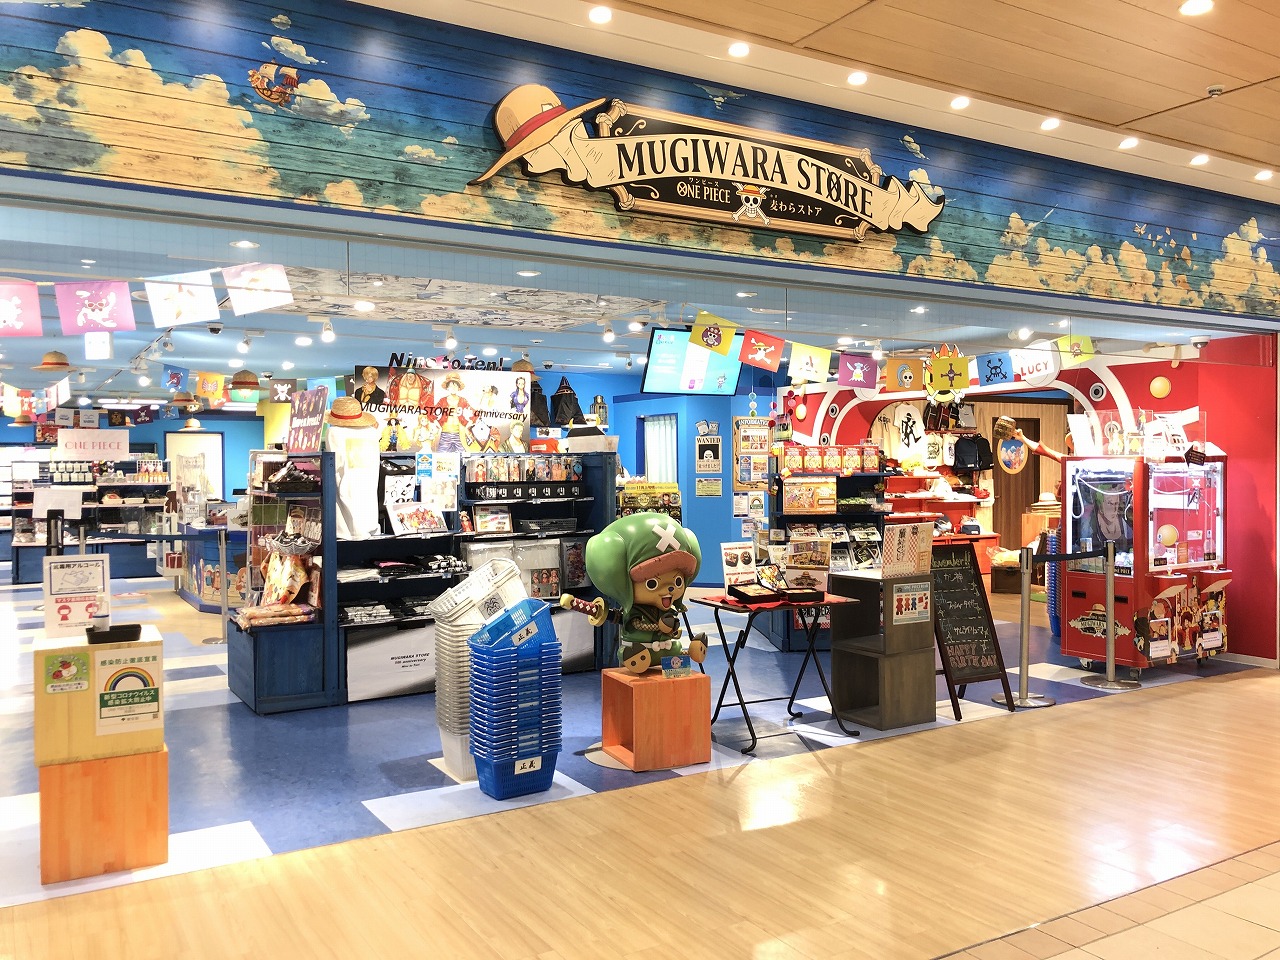 One Piece Mugiwara Store in Tokyo - Shibuya, Tokyo - Japan Travel